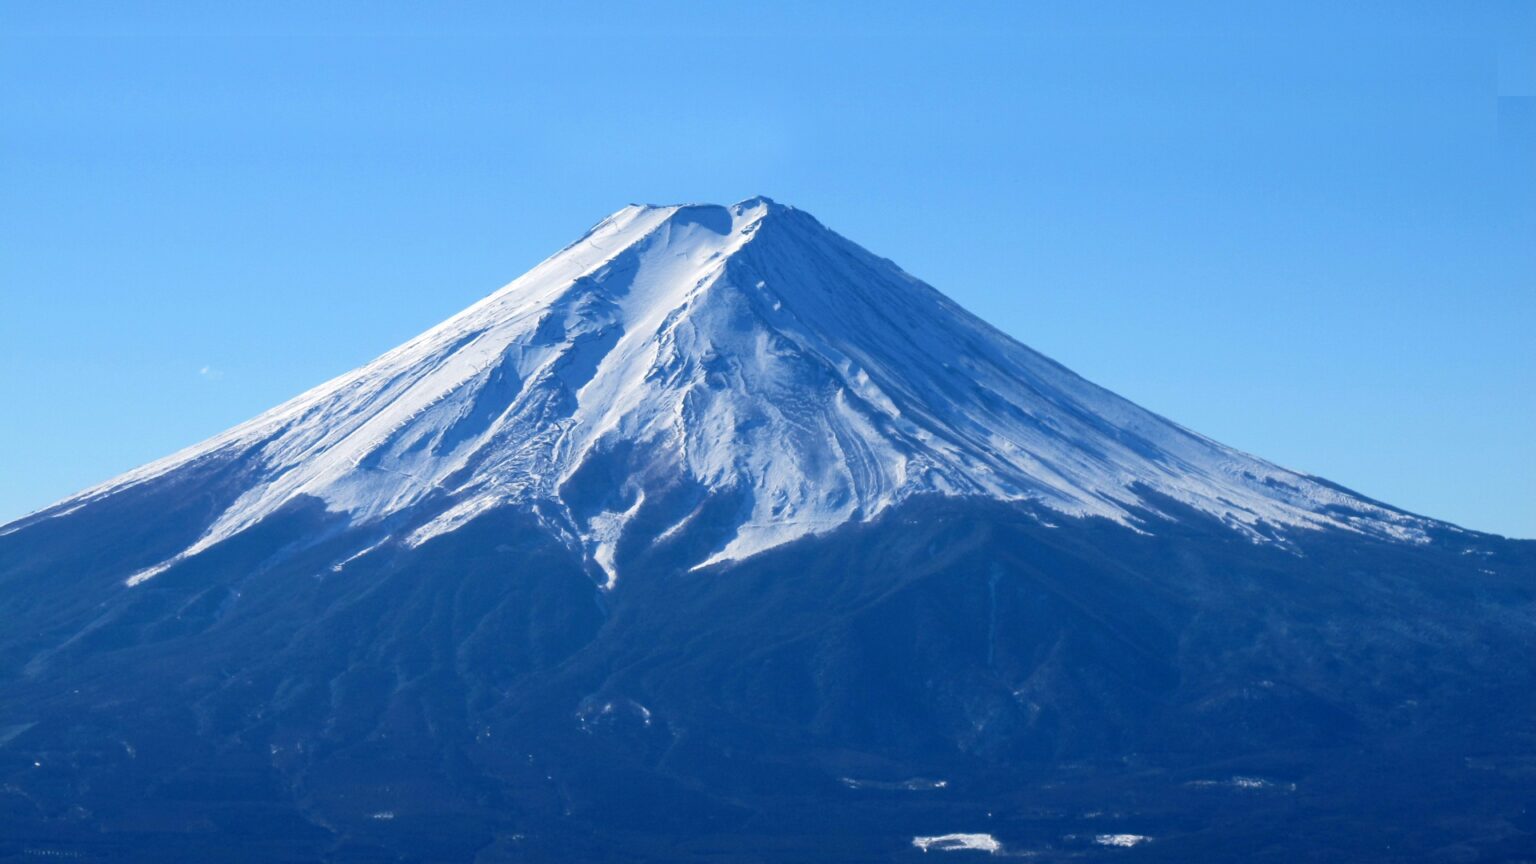 高校生富士山写真家 鈴木啓悟 の経歴やプロフィール 写真展開催日は 富士山カレンダーの通販はある マツコの知らない世界